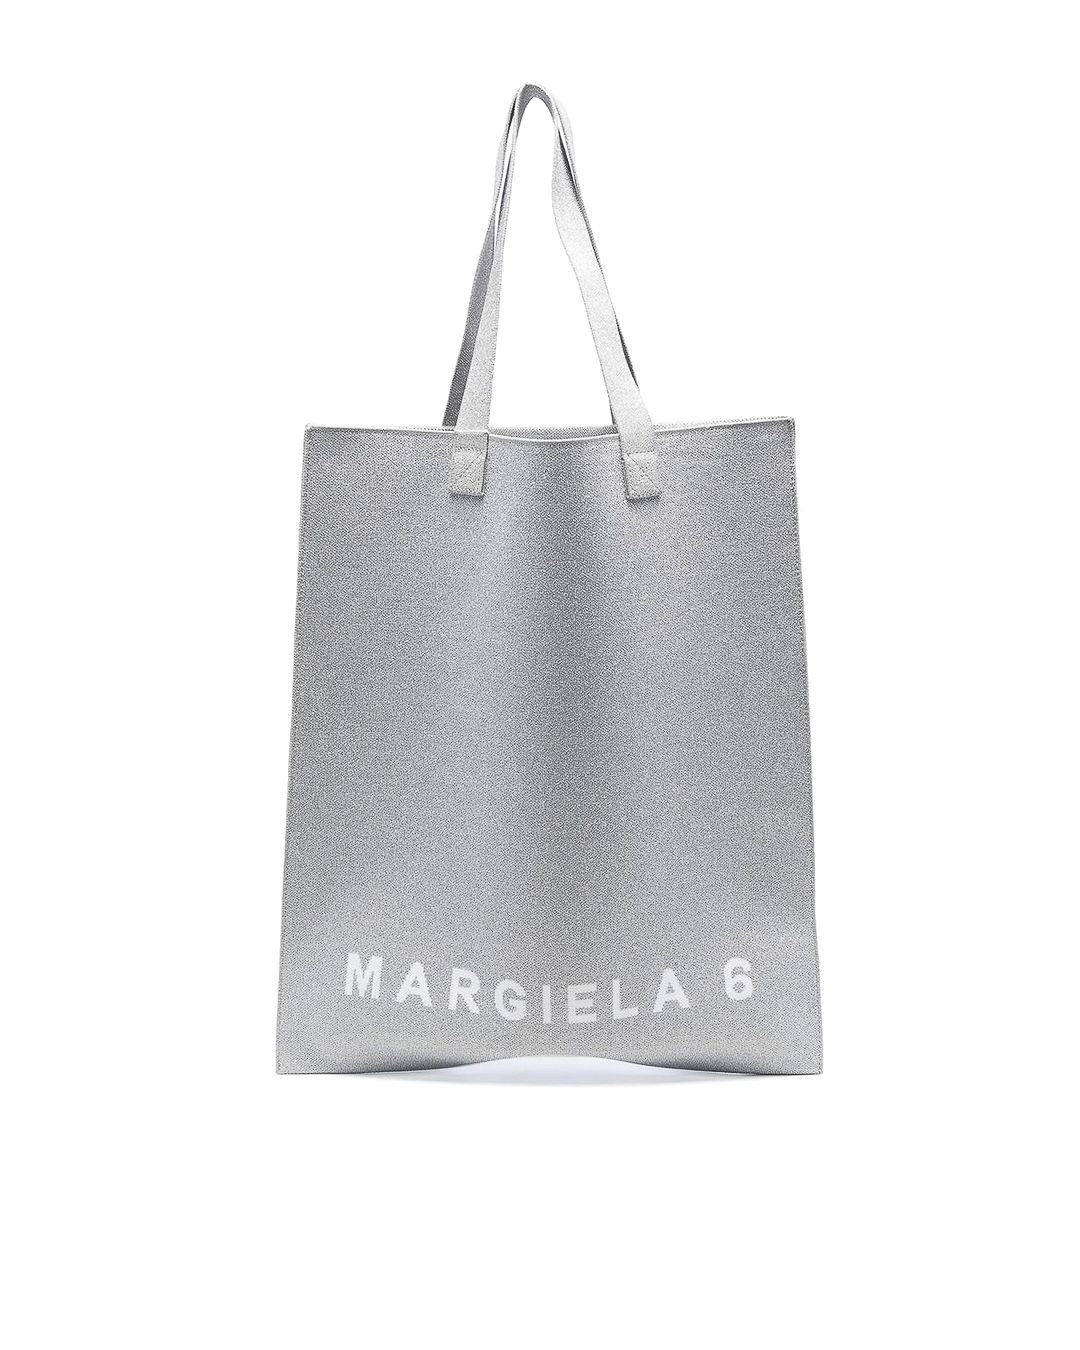 MM6 Maison Margiela с логотипом бренда  артикул SB5WC0006 марки MM6 Maison Margiela купить за 32100 руб.